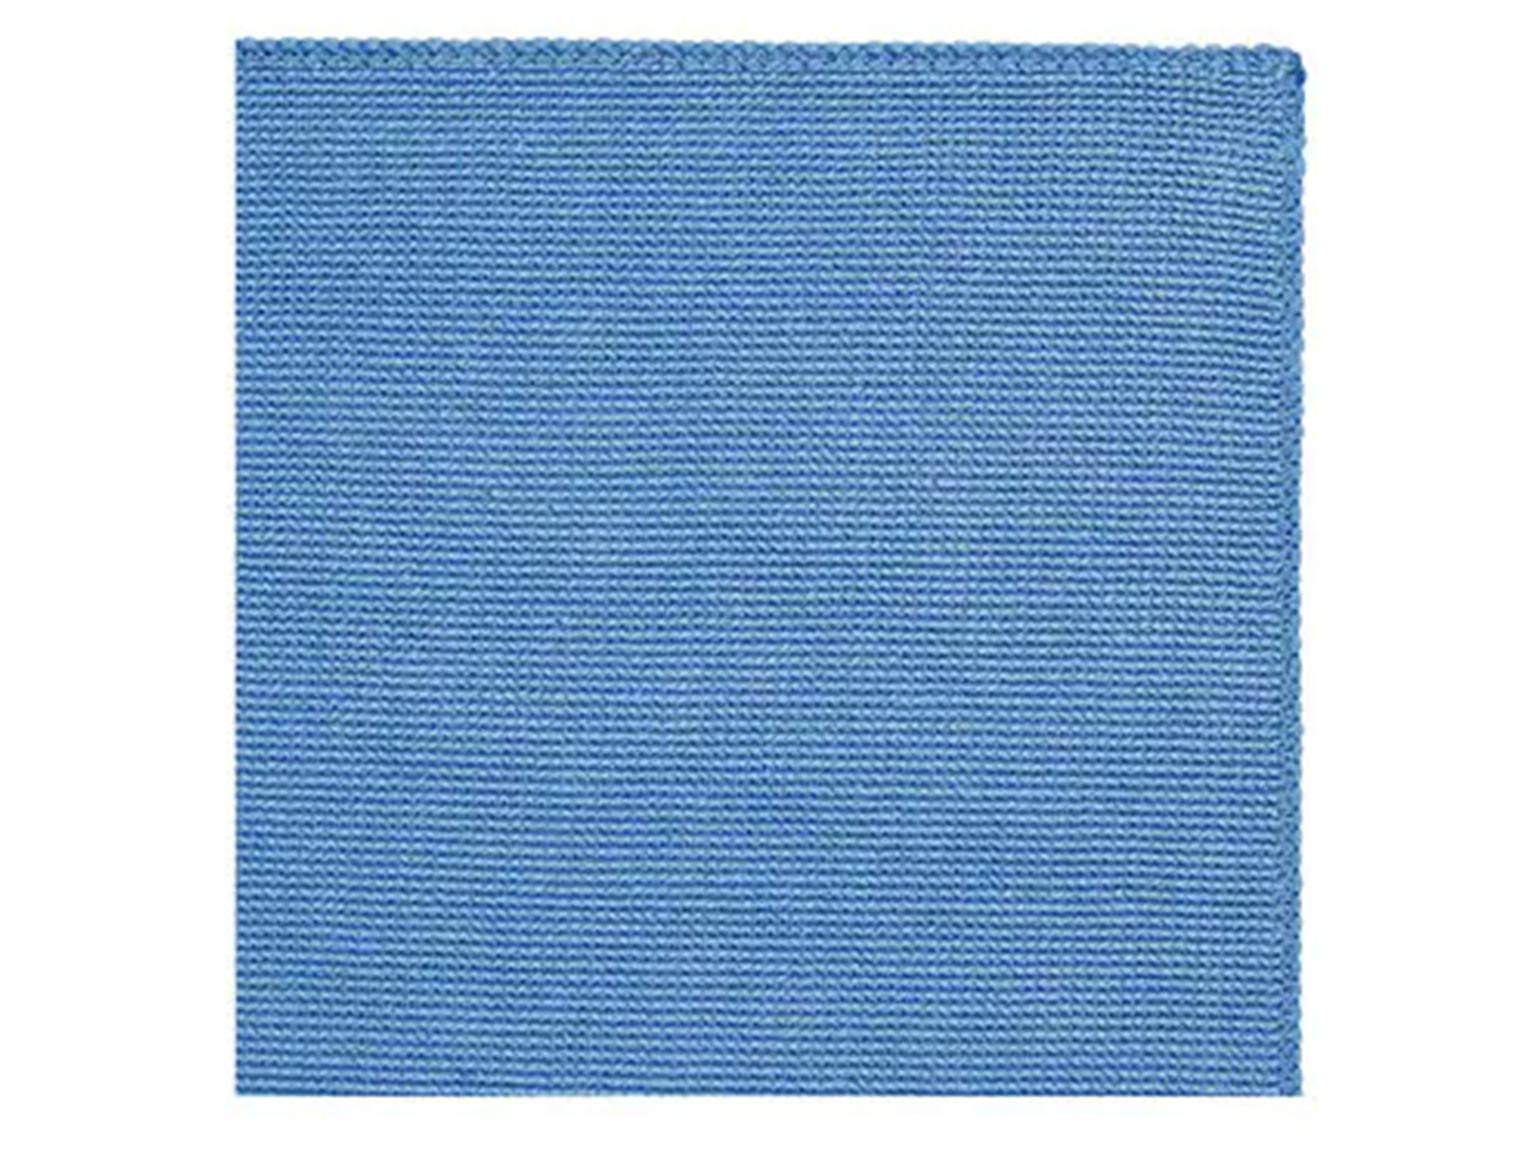 MICROFASERTUECHER 3M  Reinigungstuch 2012, blau, 36 x 36 cm